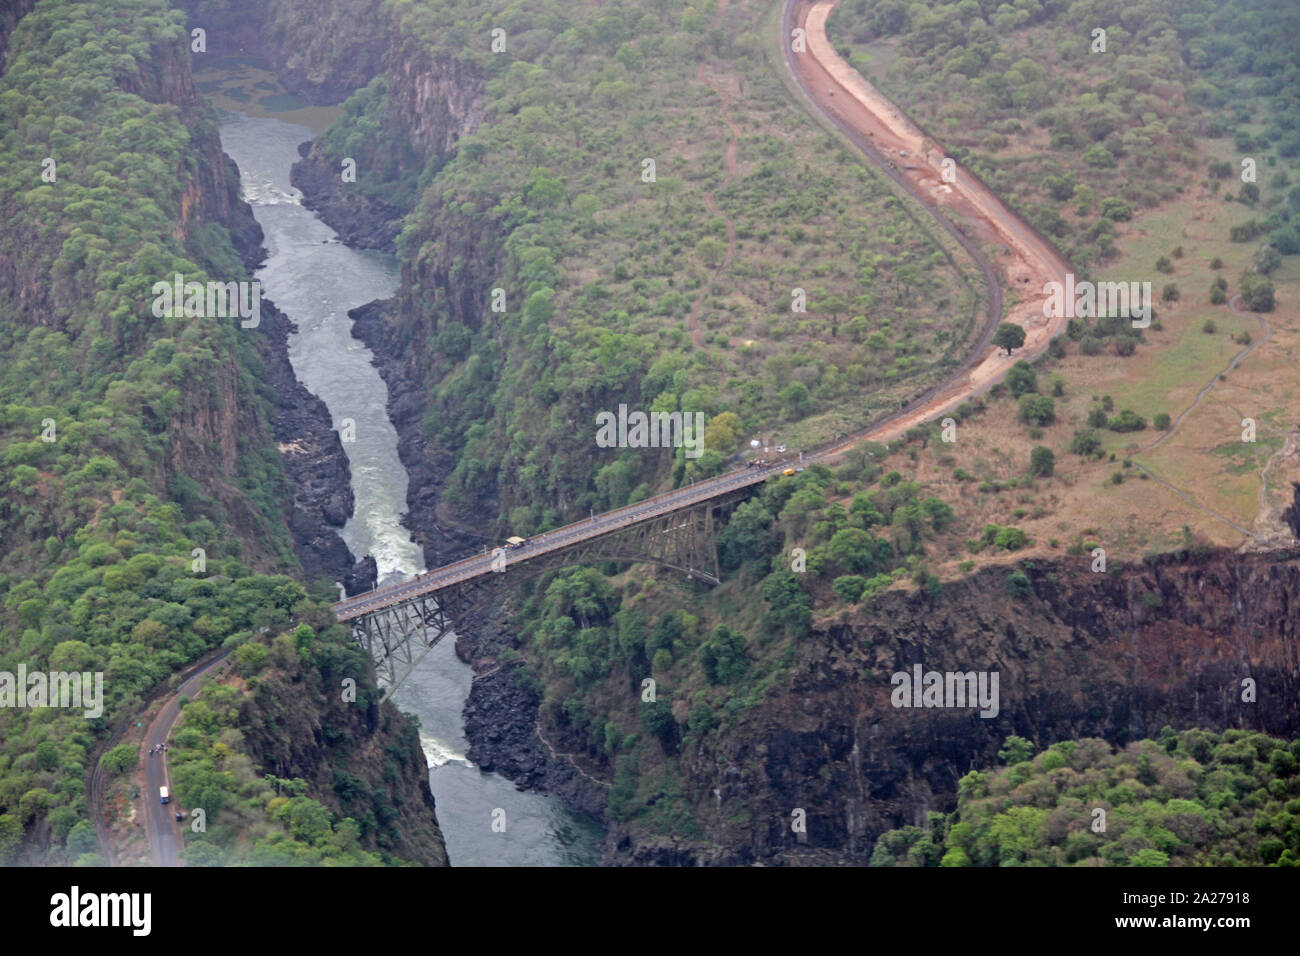 Zambezi River gorge valley and Victoria Falls Bridge, Zimbabwe/Zambia. Stock Photo